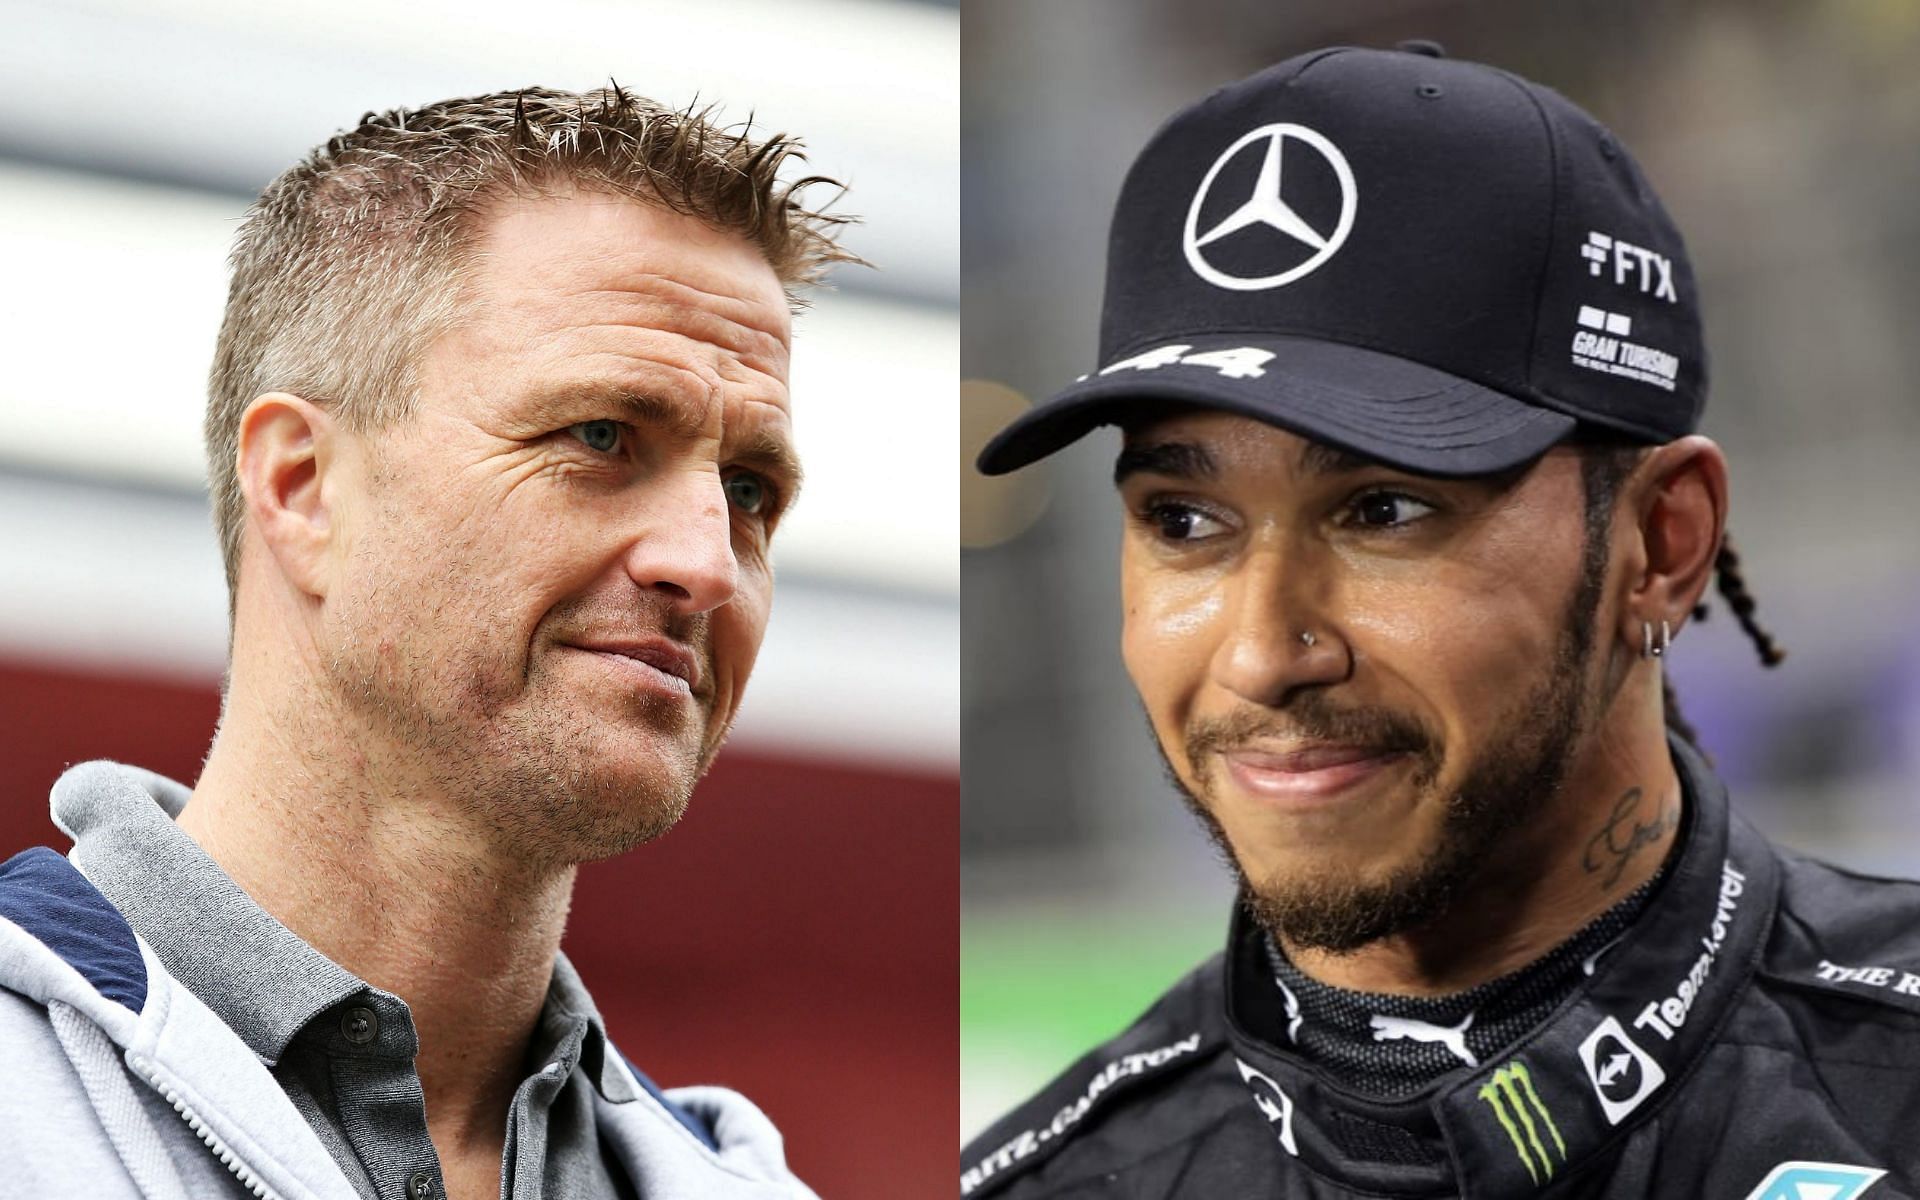 Ralf Schumacher (left) feels Mercedes should prepare for post-Lewis Hamilton era